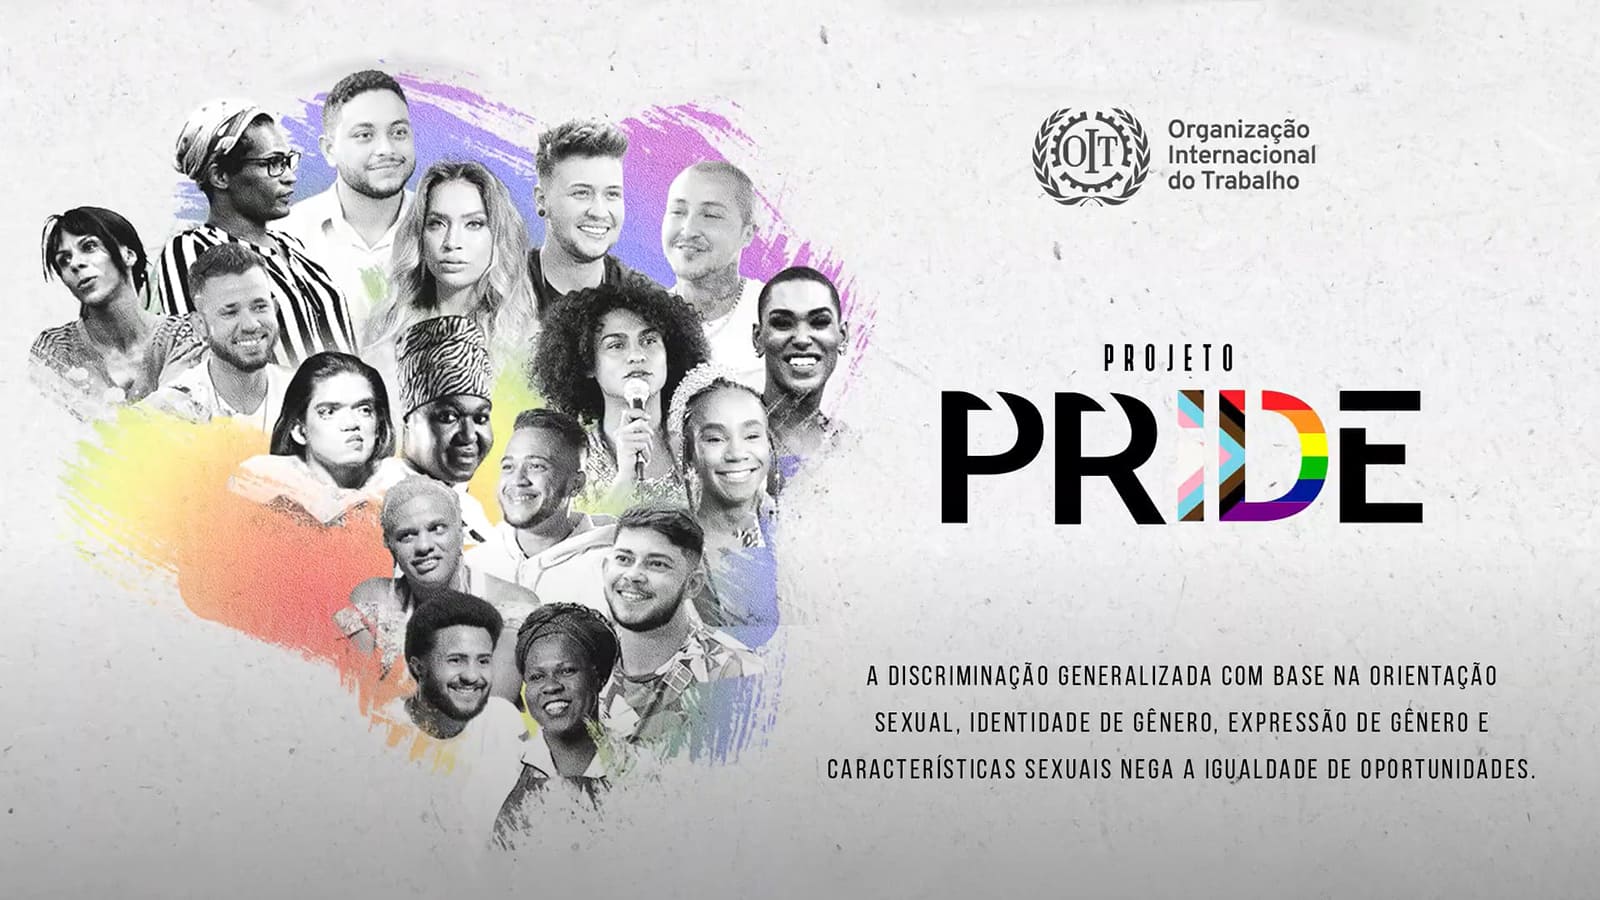 Ilustração com o título Projeto Pride, fotografias de diversos rostos e texto, descritos na legenda.